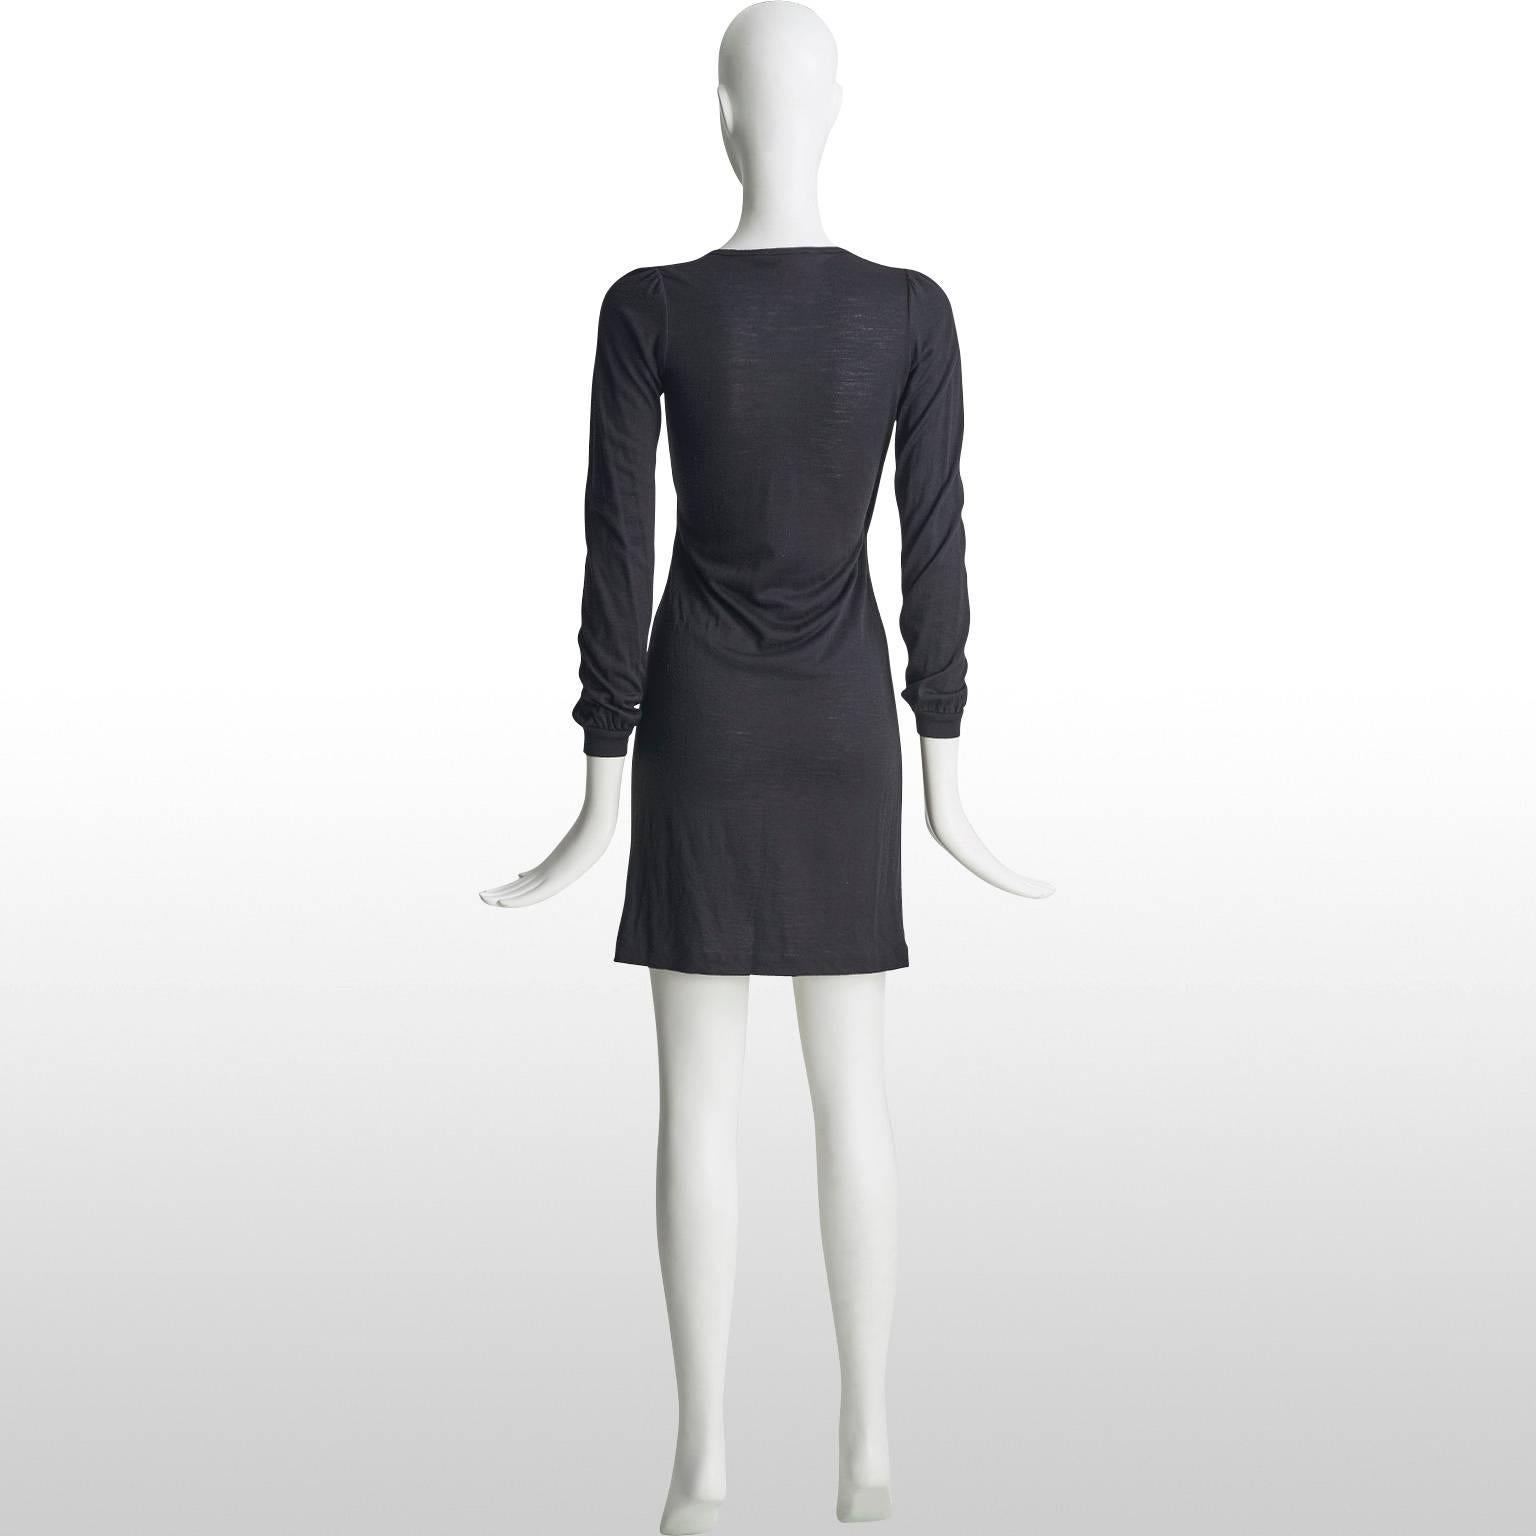 Vanessa Bruno Black V Neck Applique Dress Approx Size UK 6 For Sale 1